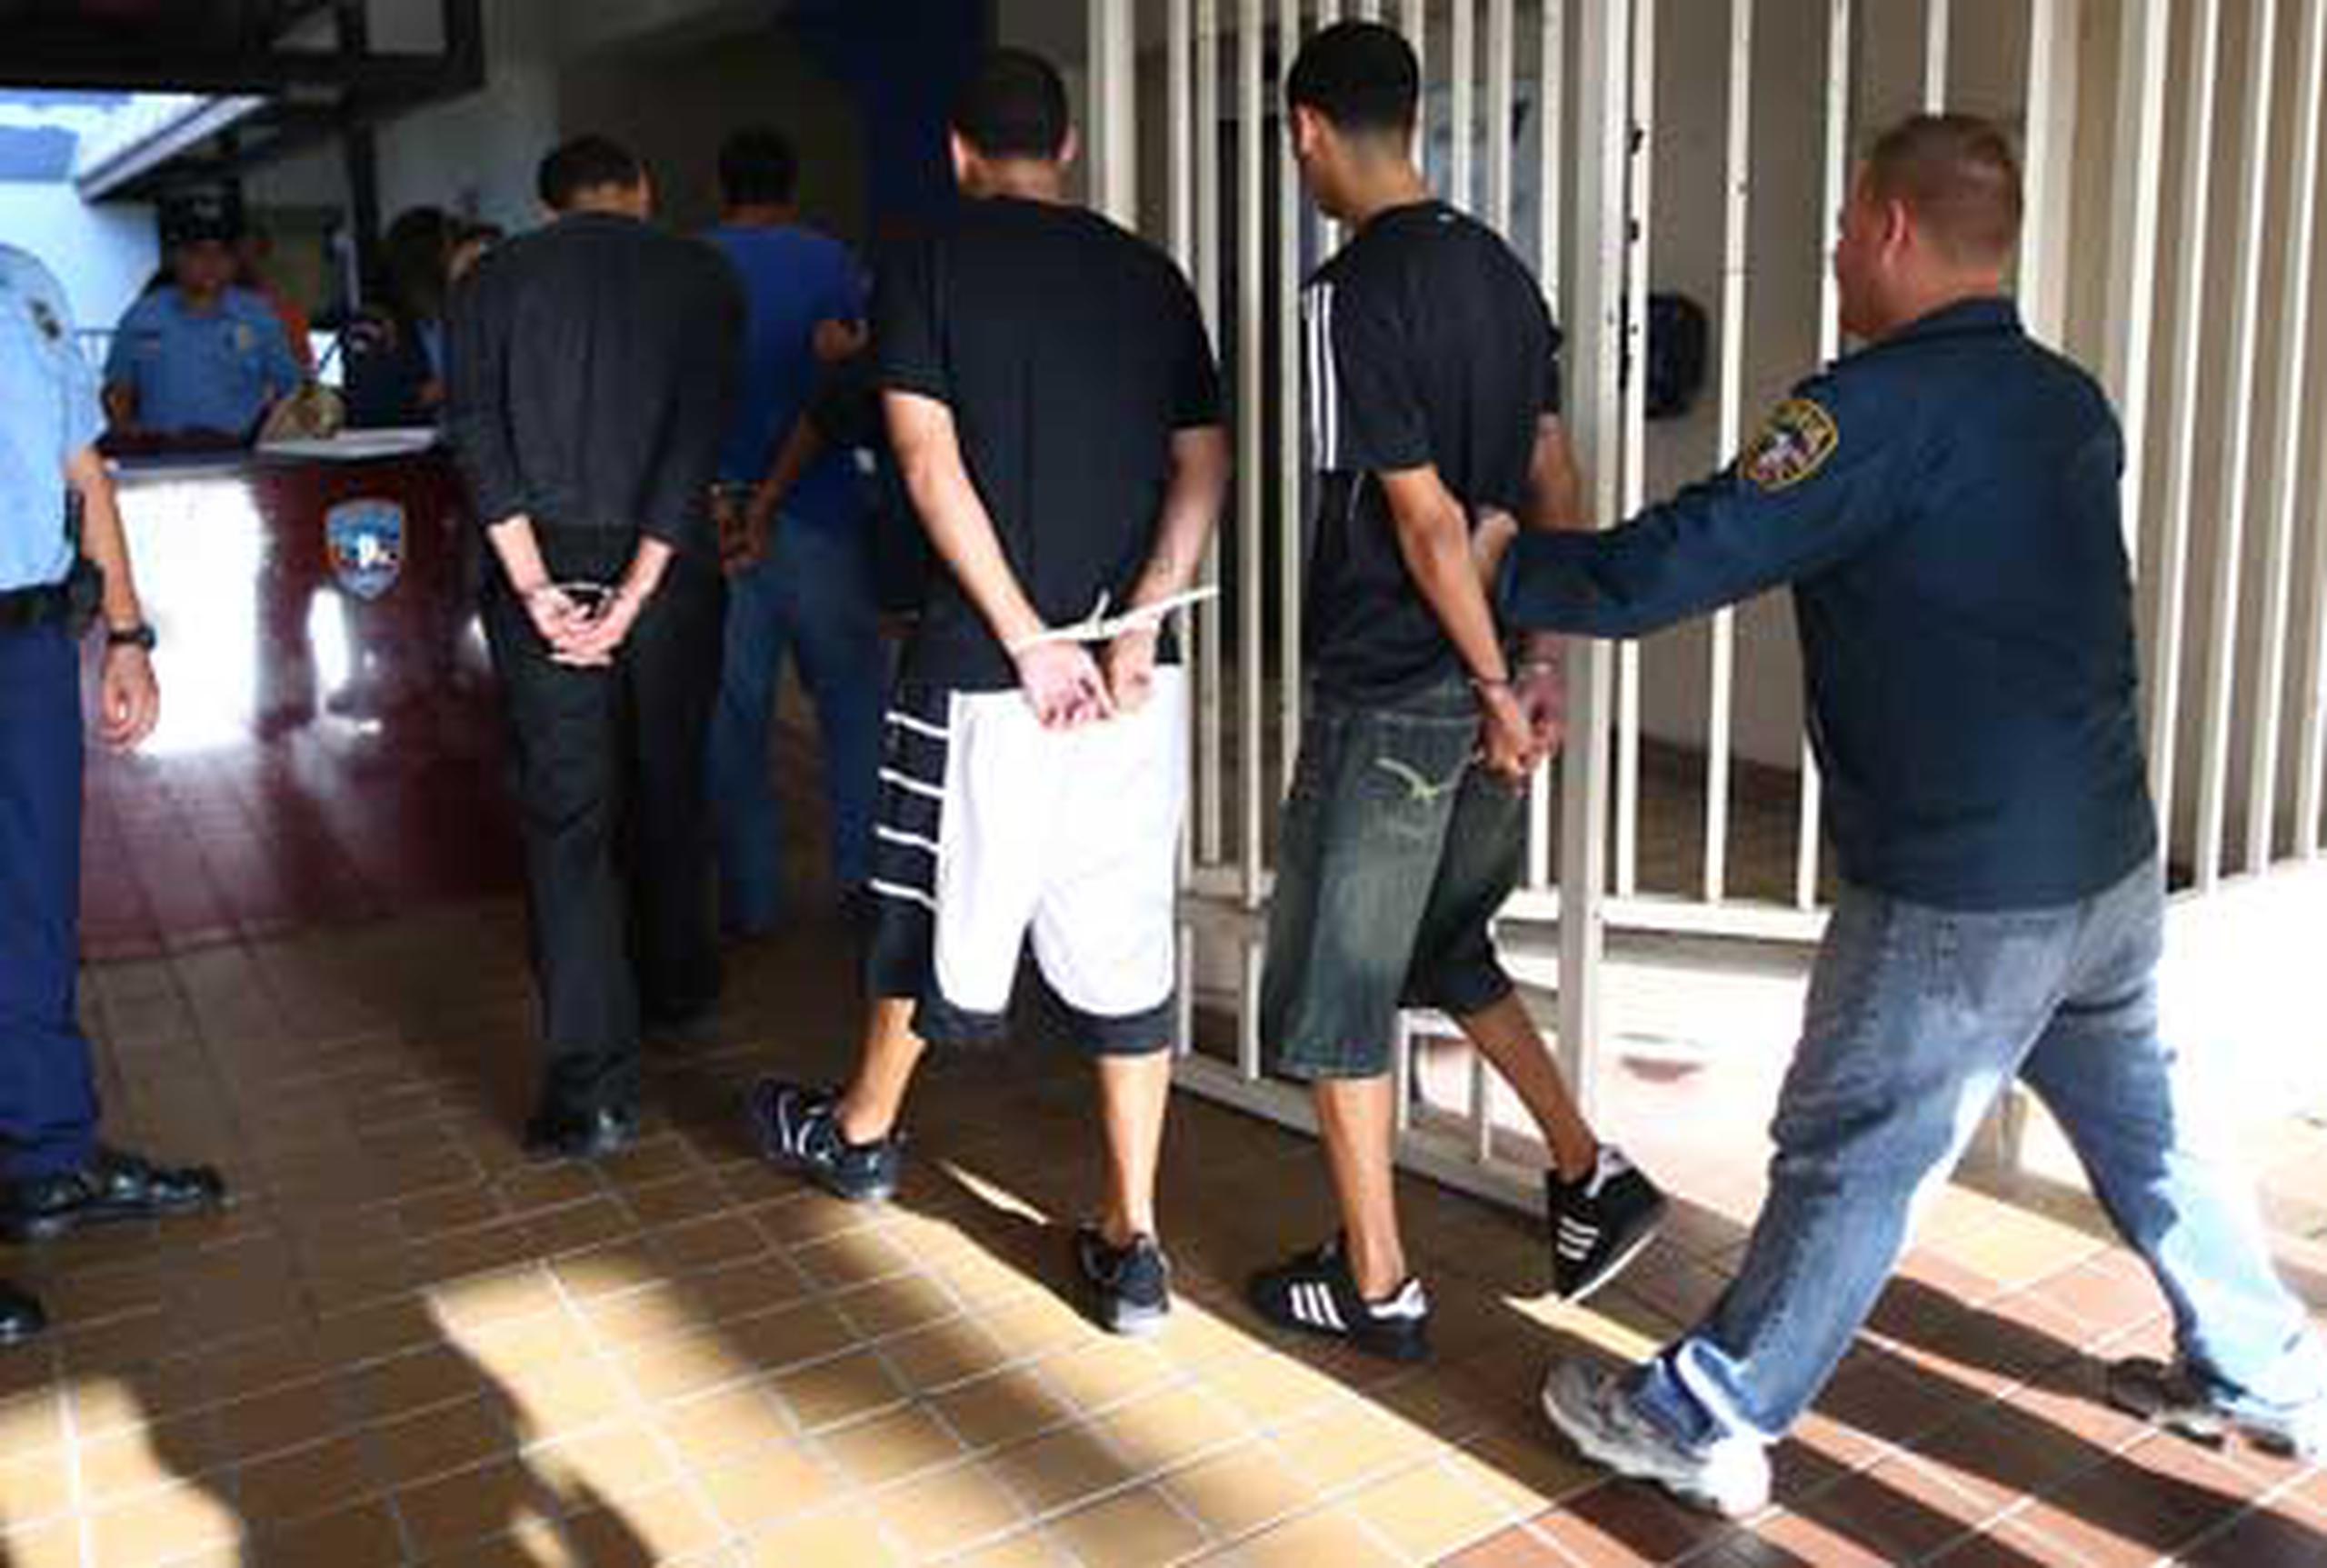 Los 116 arrestos diligenciados responden a una solicitud de 181 órdenes de arresto emitidas por varios tribunales de Puerto Rico. (Jose.madera@gfrmedia.com)